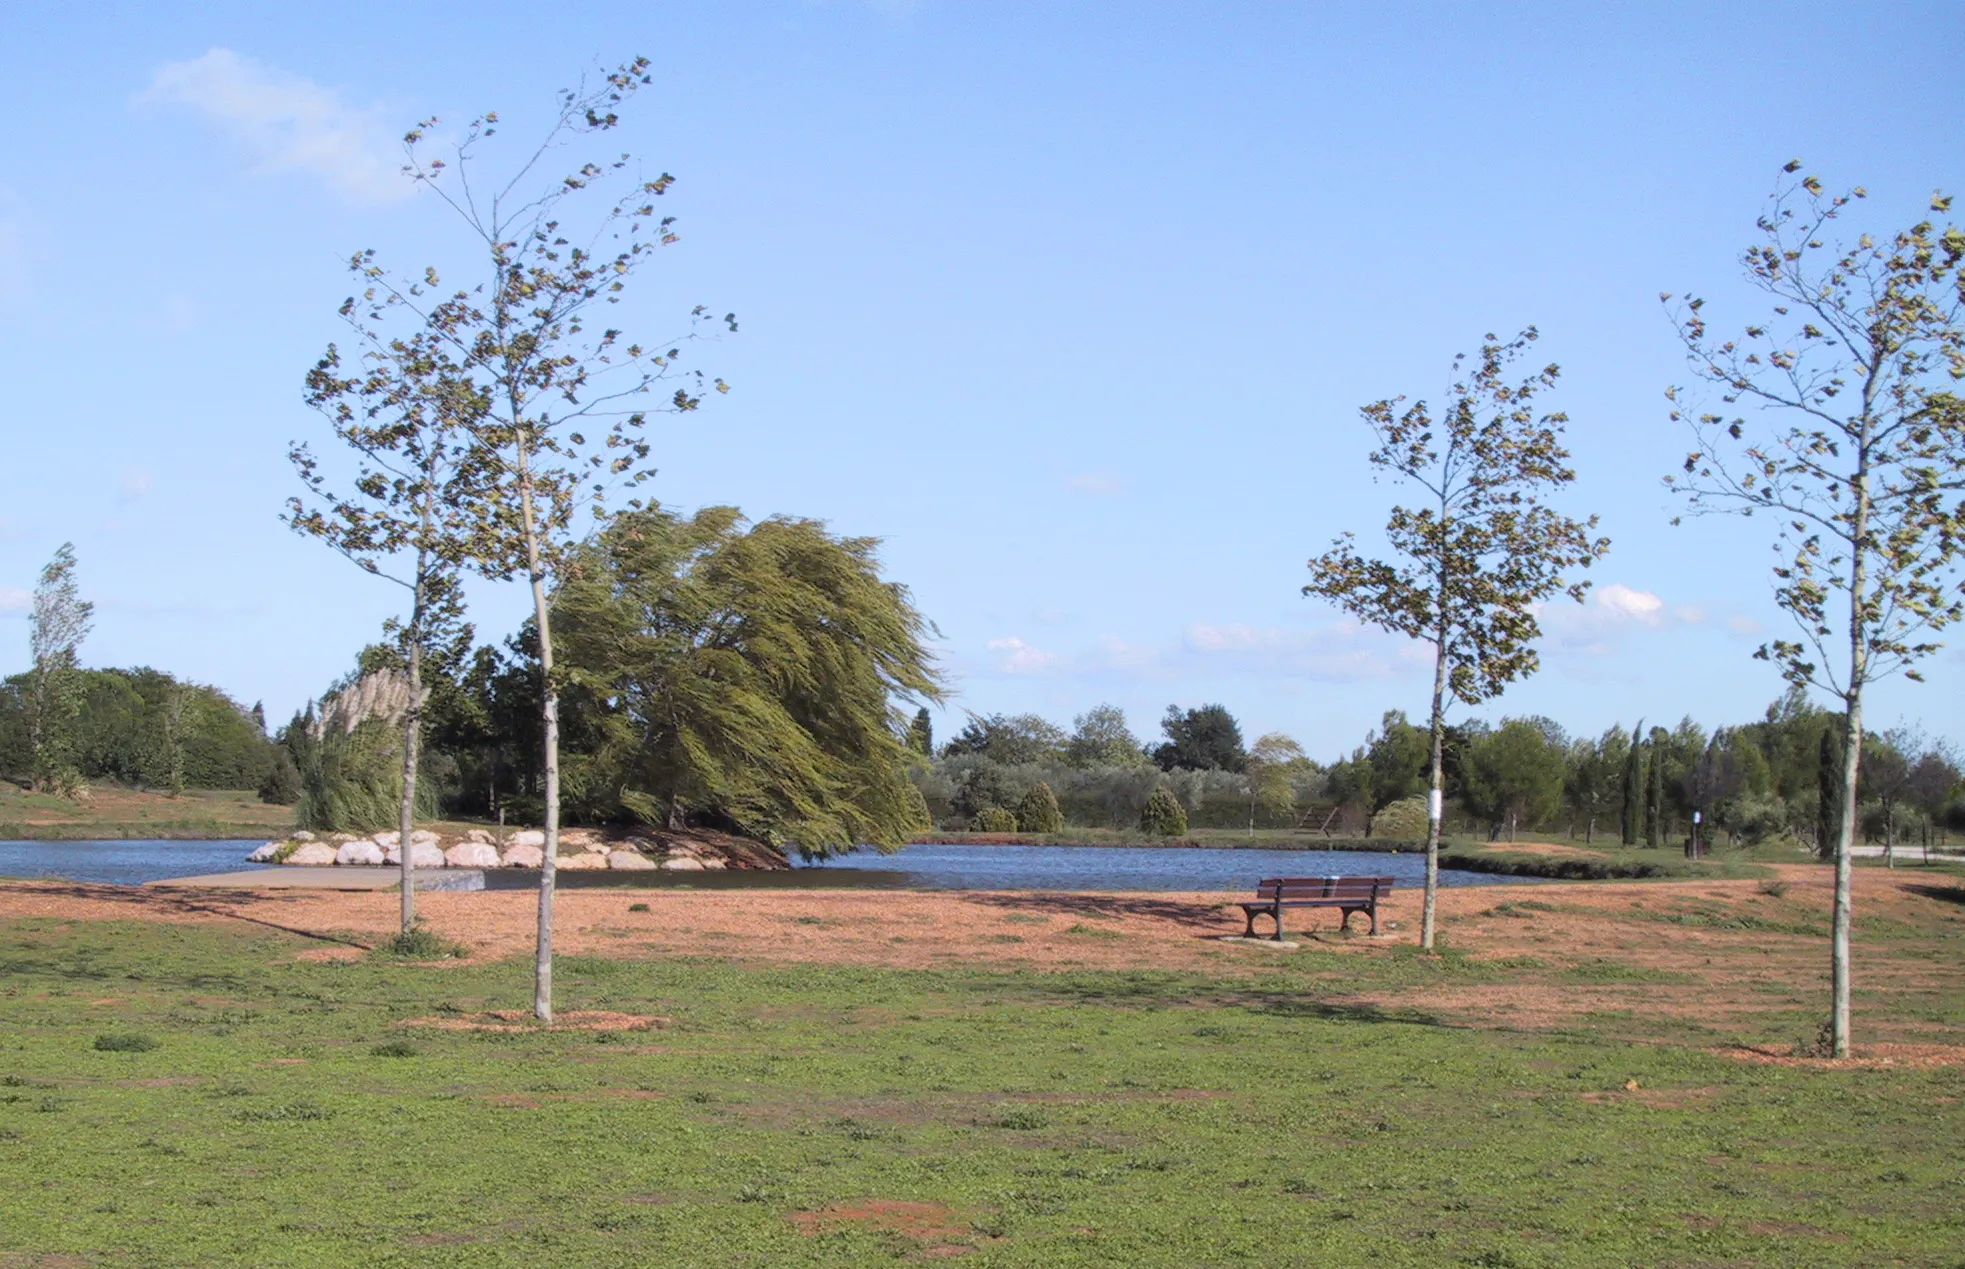 Photo showing: Vue du parc municipal de Garons et de son plan d'eau.

J'ai pris cette photo moi-même le 26 septembre 2006. Elle a été recadrée et a subie une correction chromatique.